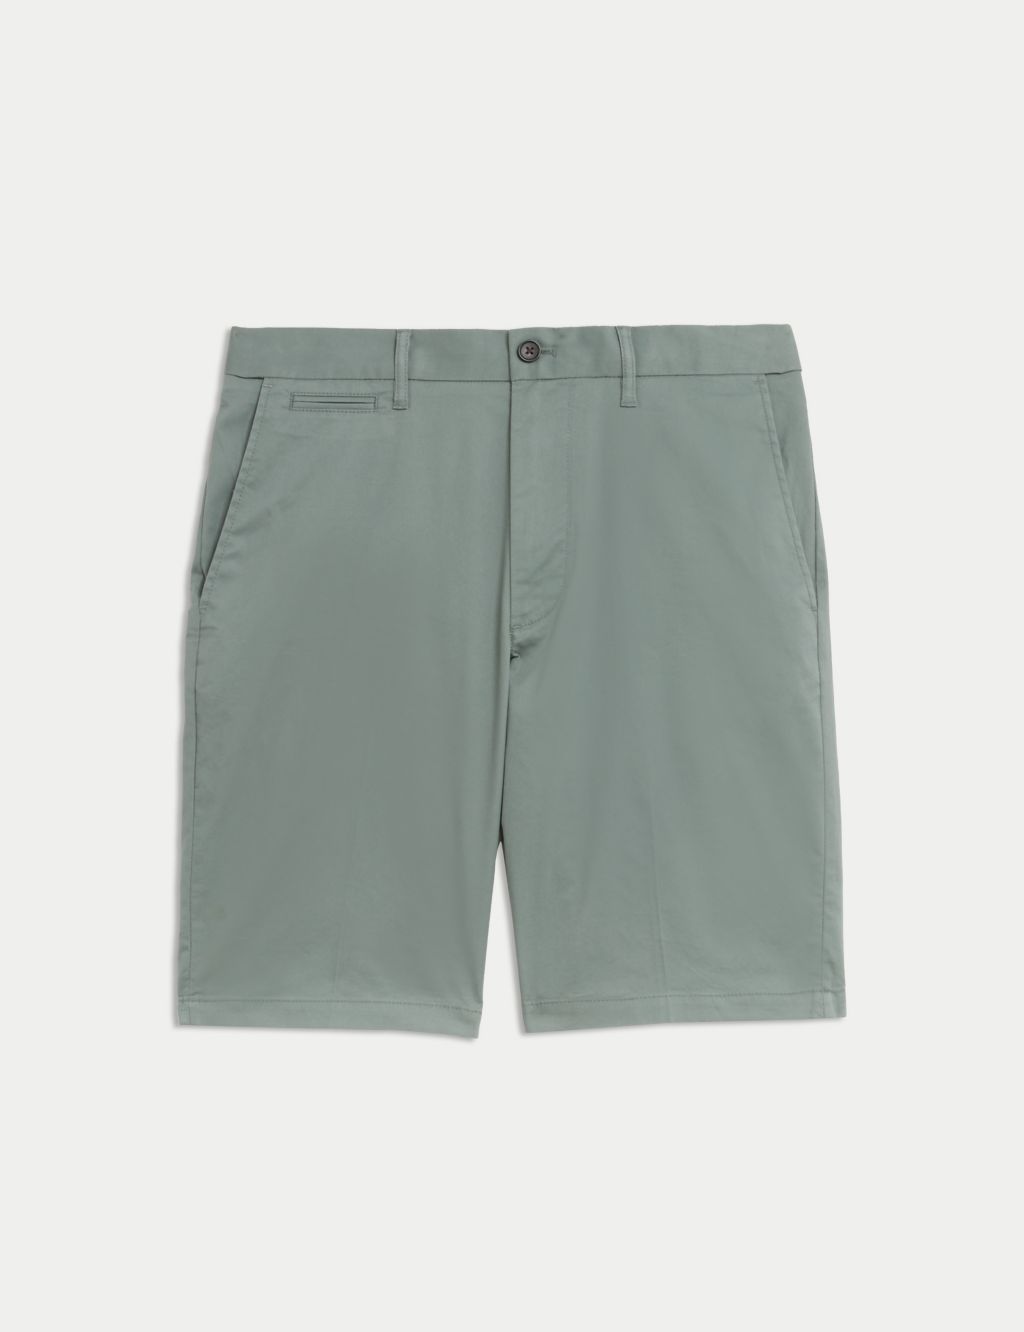 Men's Chino Shorts | M&S